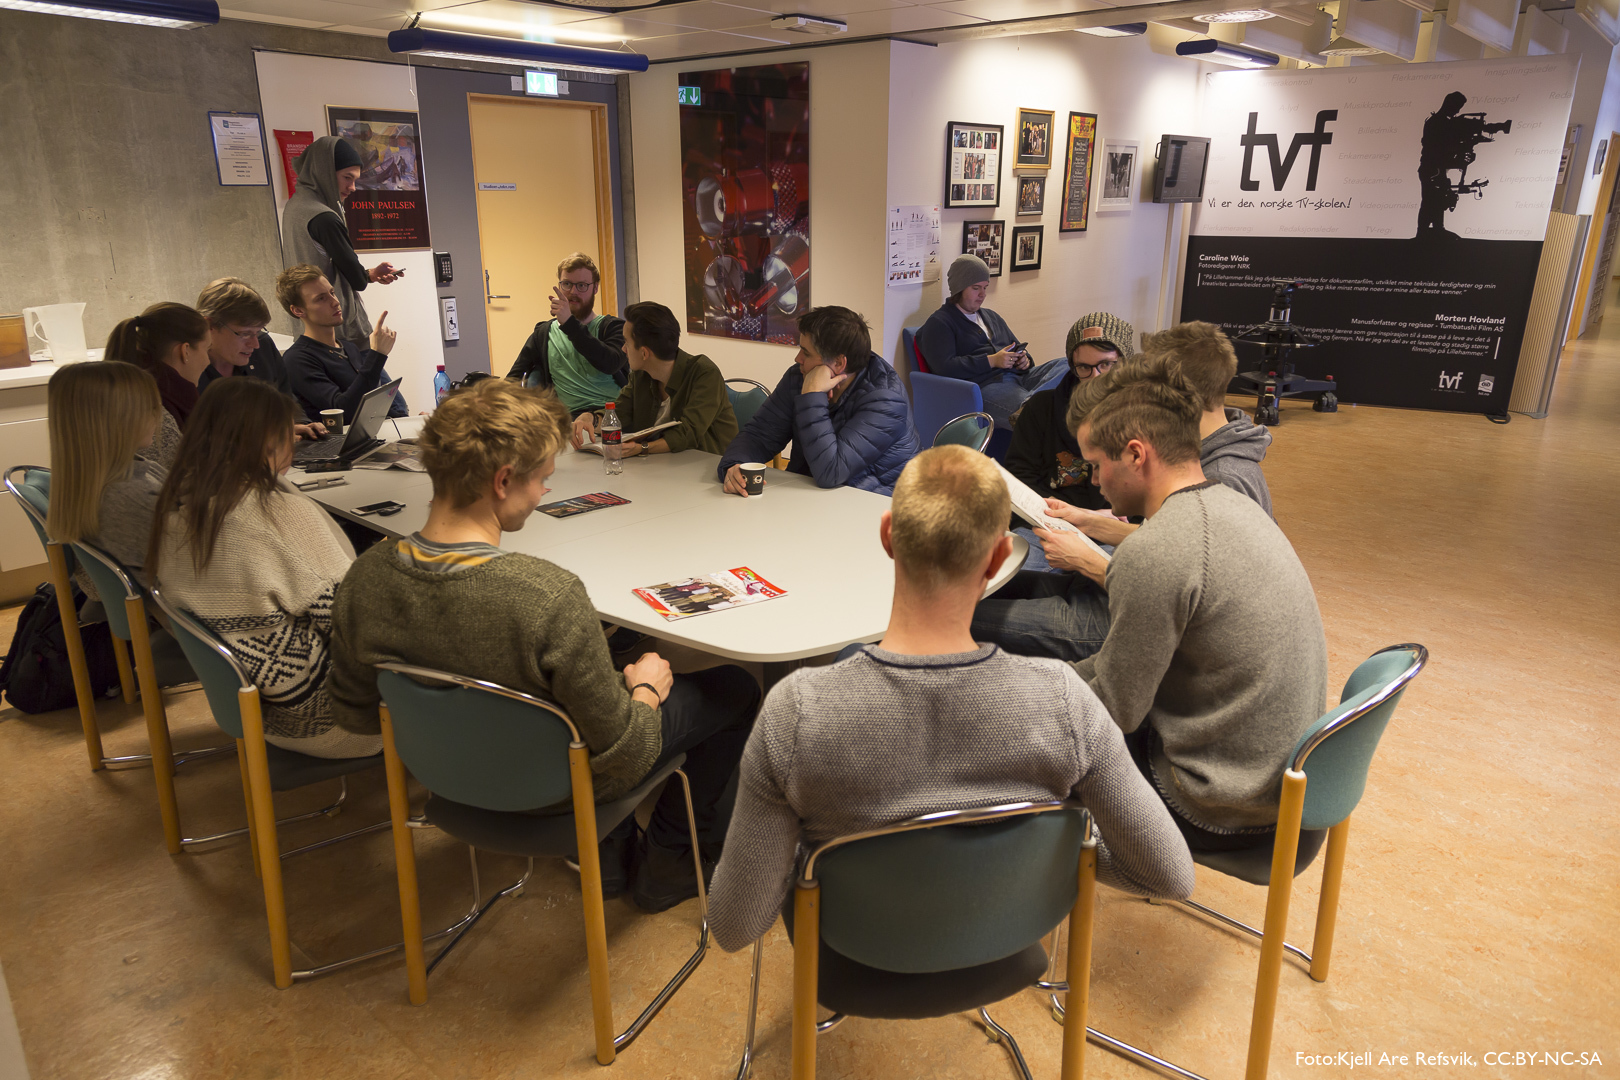 Gruppa venter i spisekroken på TVF på å få møte Eirik Kaasa Eliassen på fjernsynsutdanningen.